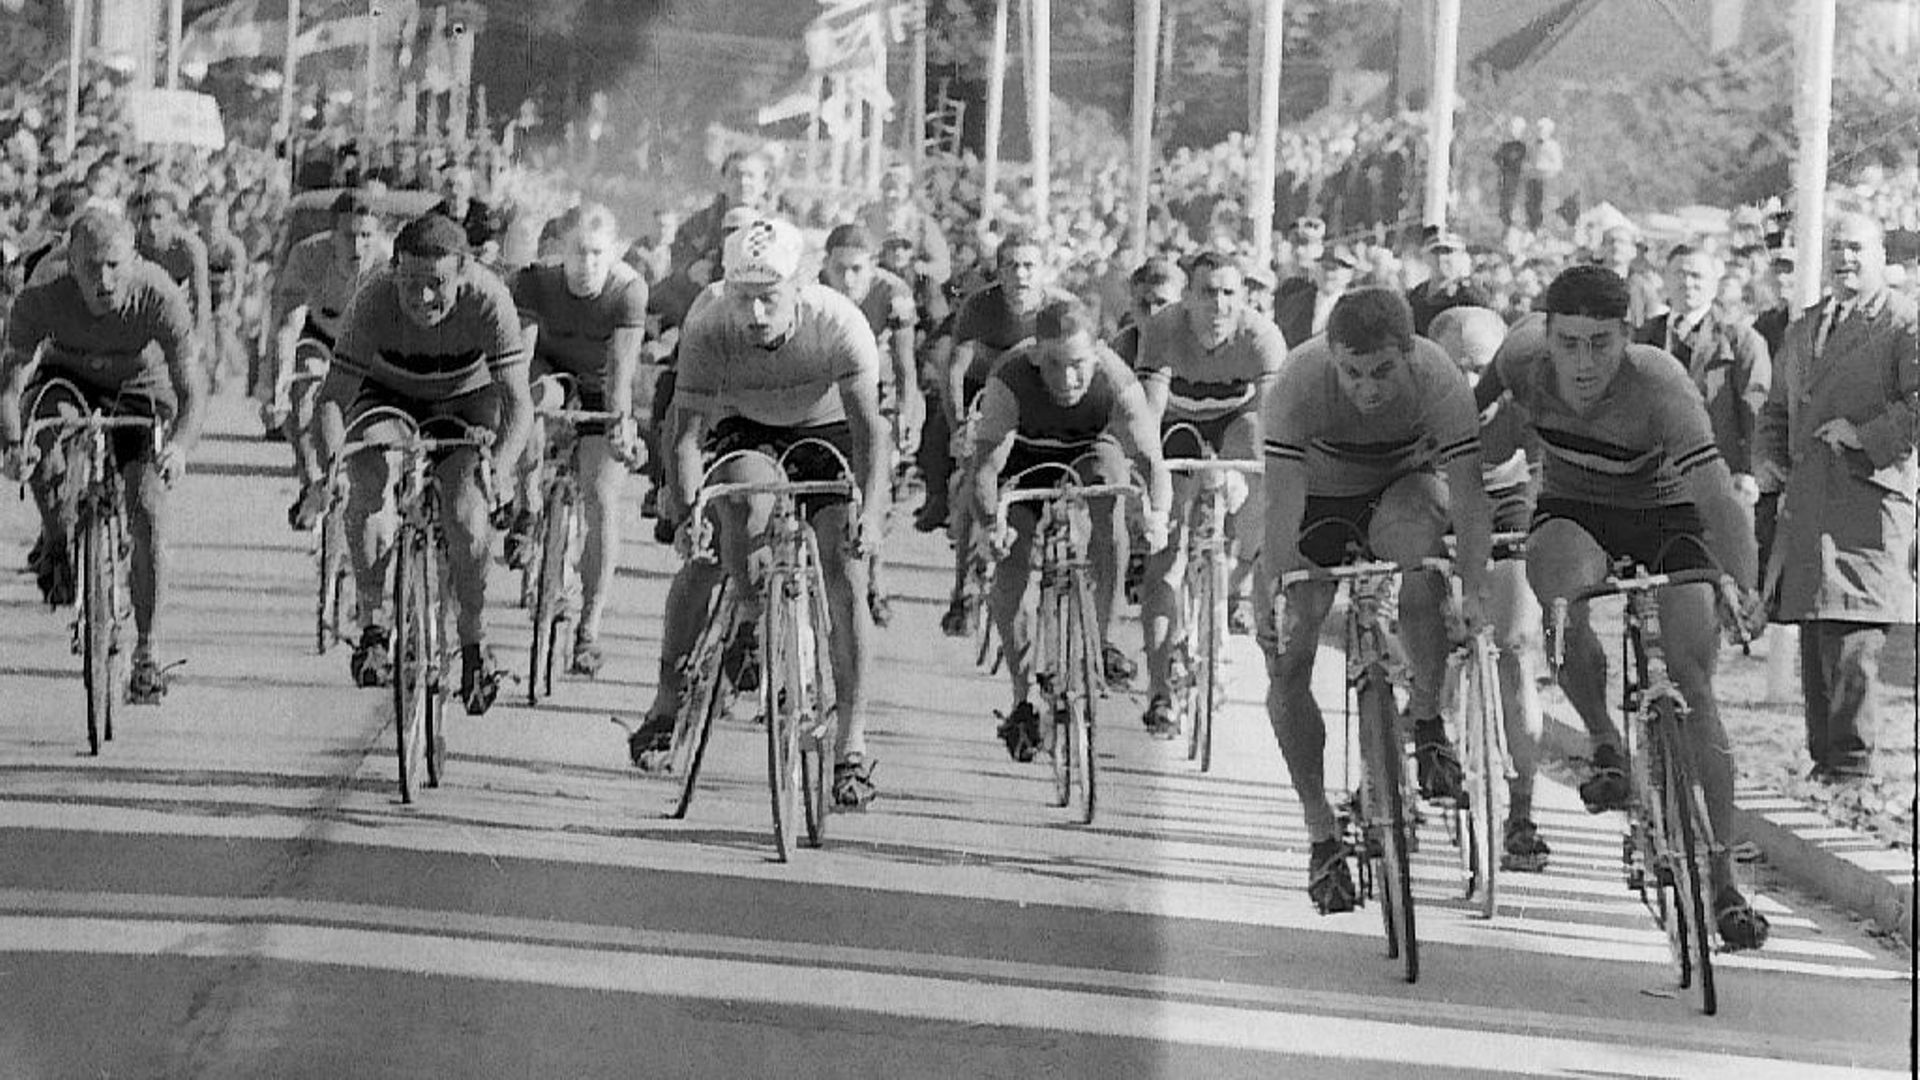 A droite de l’image, le sprint final entre Rik Van Looy et Benoni Beheyt lors des Mondiaux 1963.